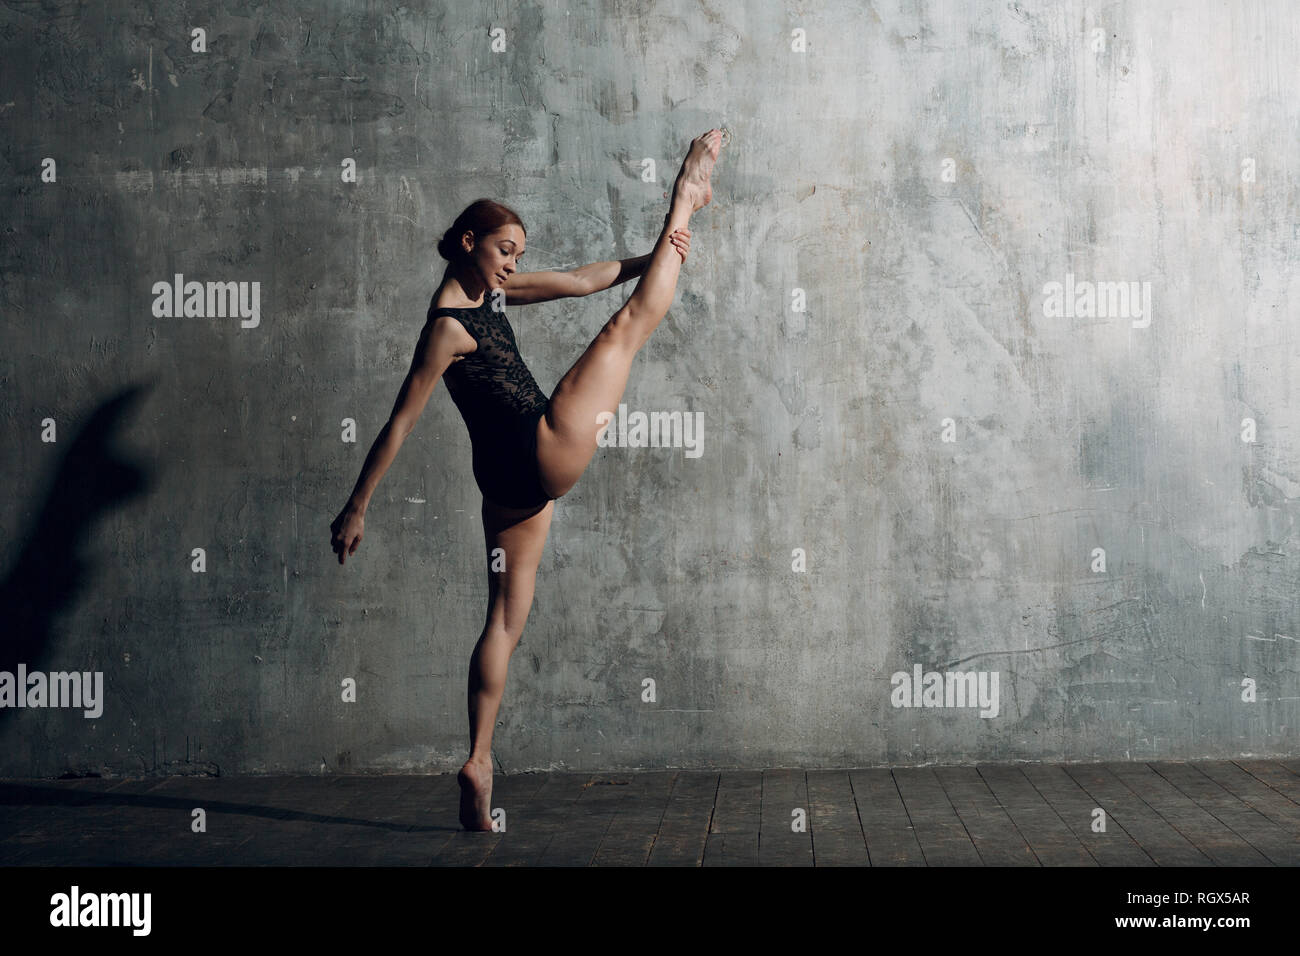 Ballerina ausdehnen. Junge schöne Frau Ballett Tänzerin, in professionellen  Outfit gekleidet, Spitzenschuhe und schwarzen Körper Stockfotografie - Alamy